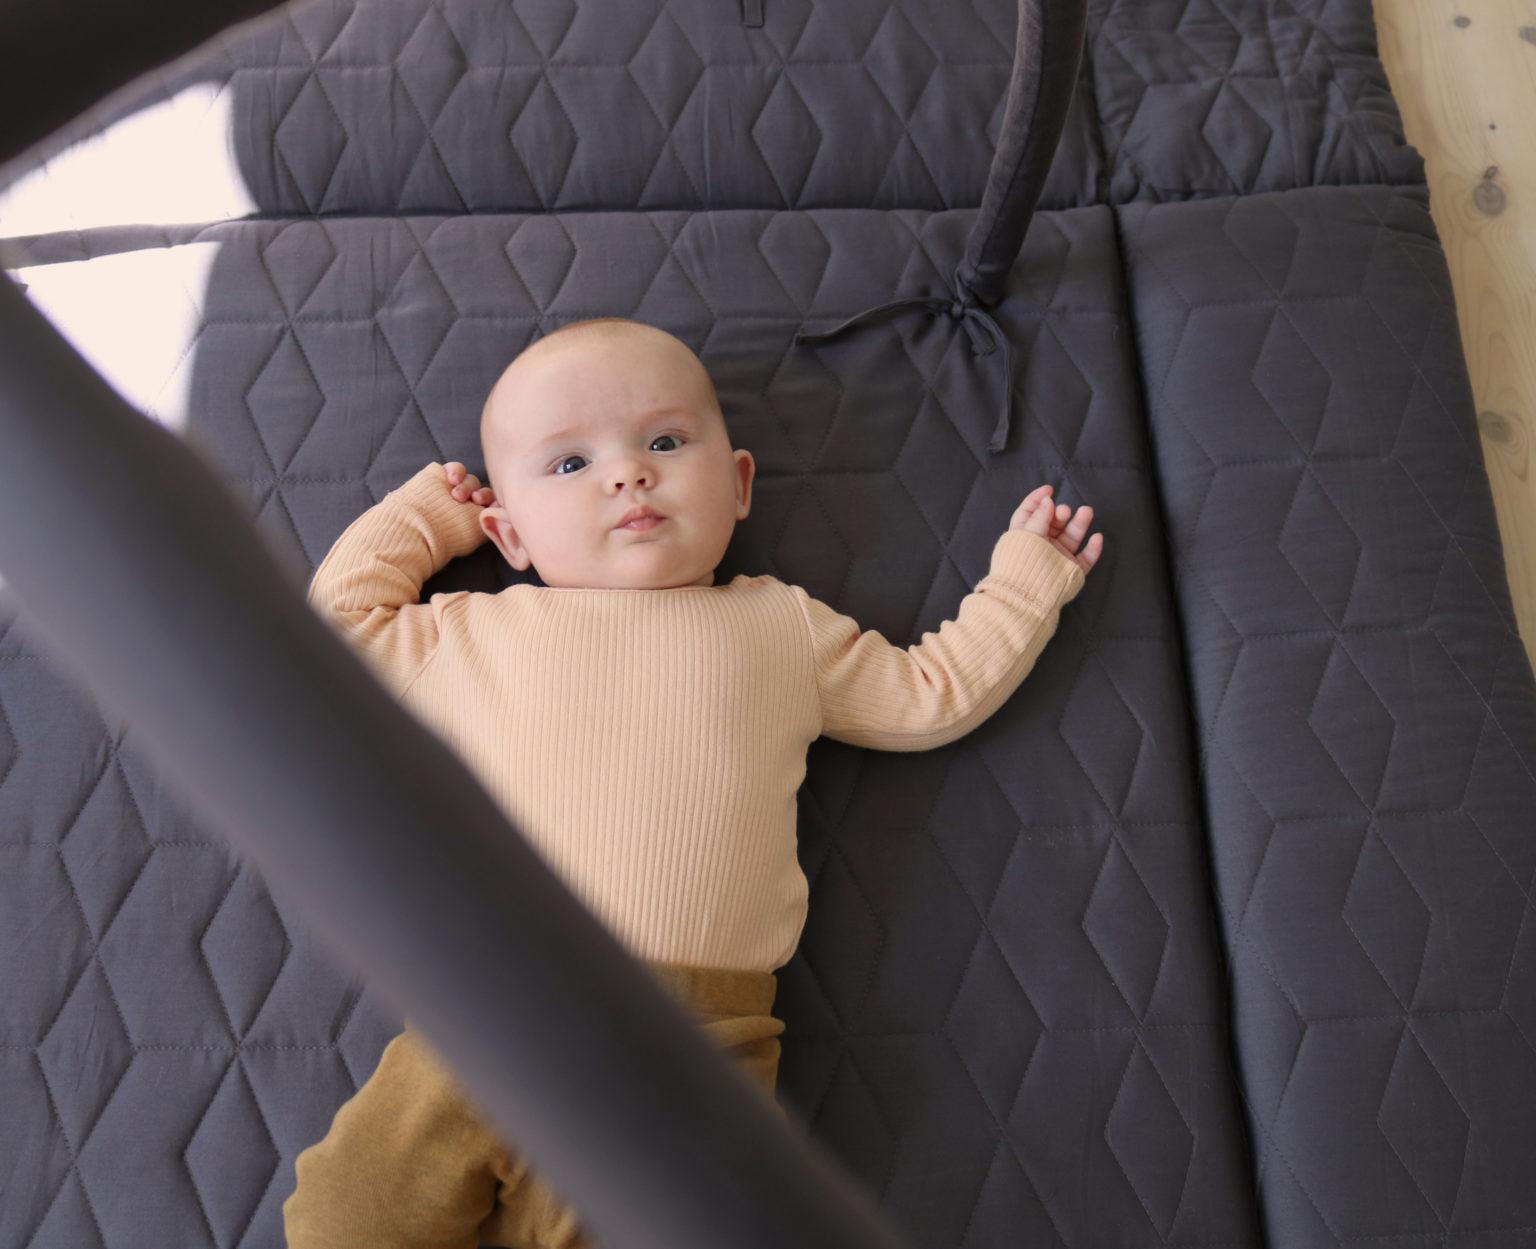 Ein Baby liegt auf einer grauen, gesteppte Spielmatte. Das Baby trägt einen beigen Pullover und braune Hosen und blickt direkt in die Kamera. Der Spielbogen ist teilweise im Bild sichtbar.